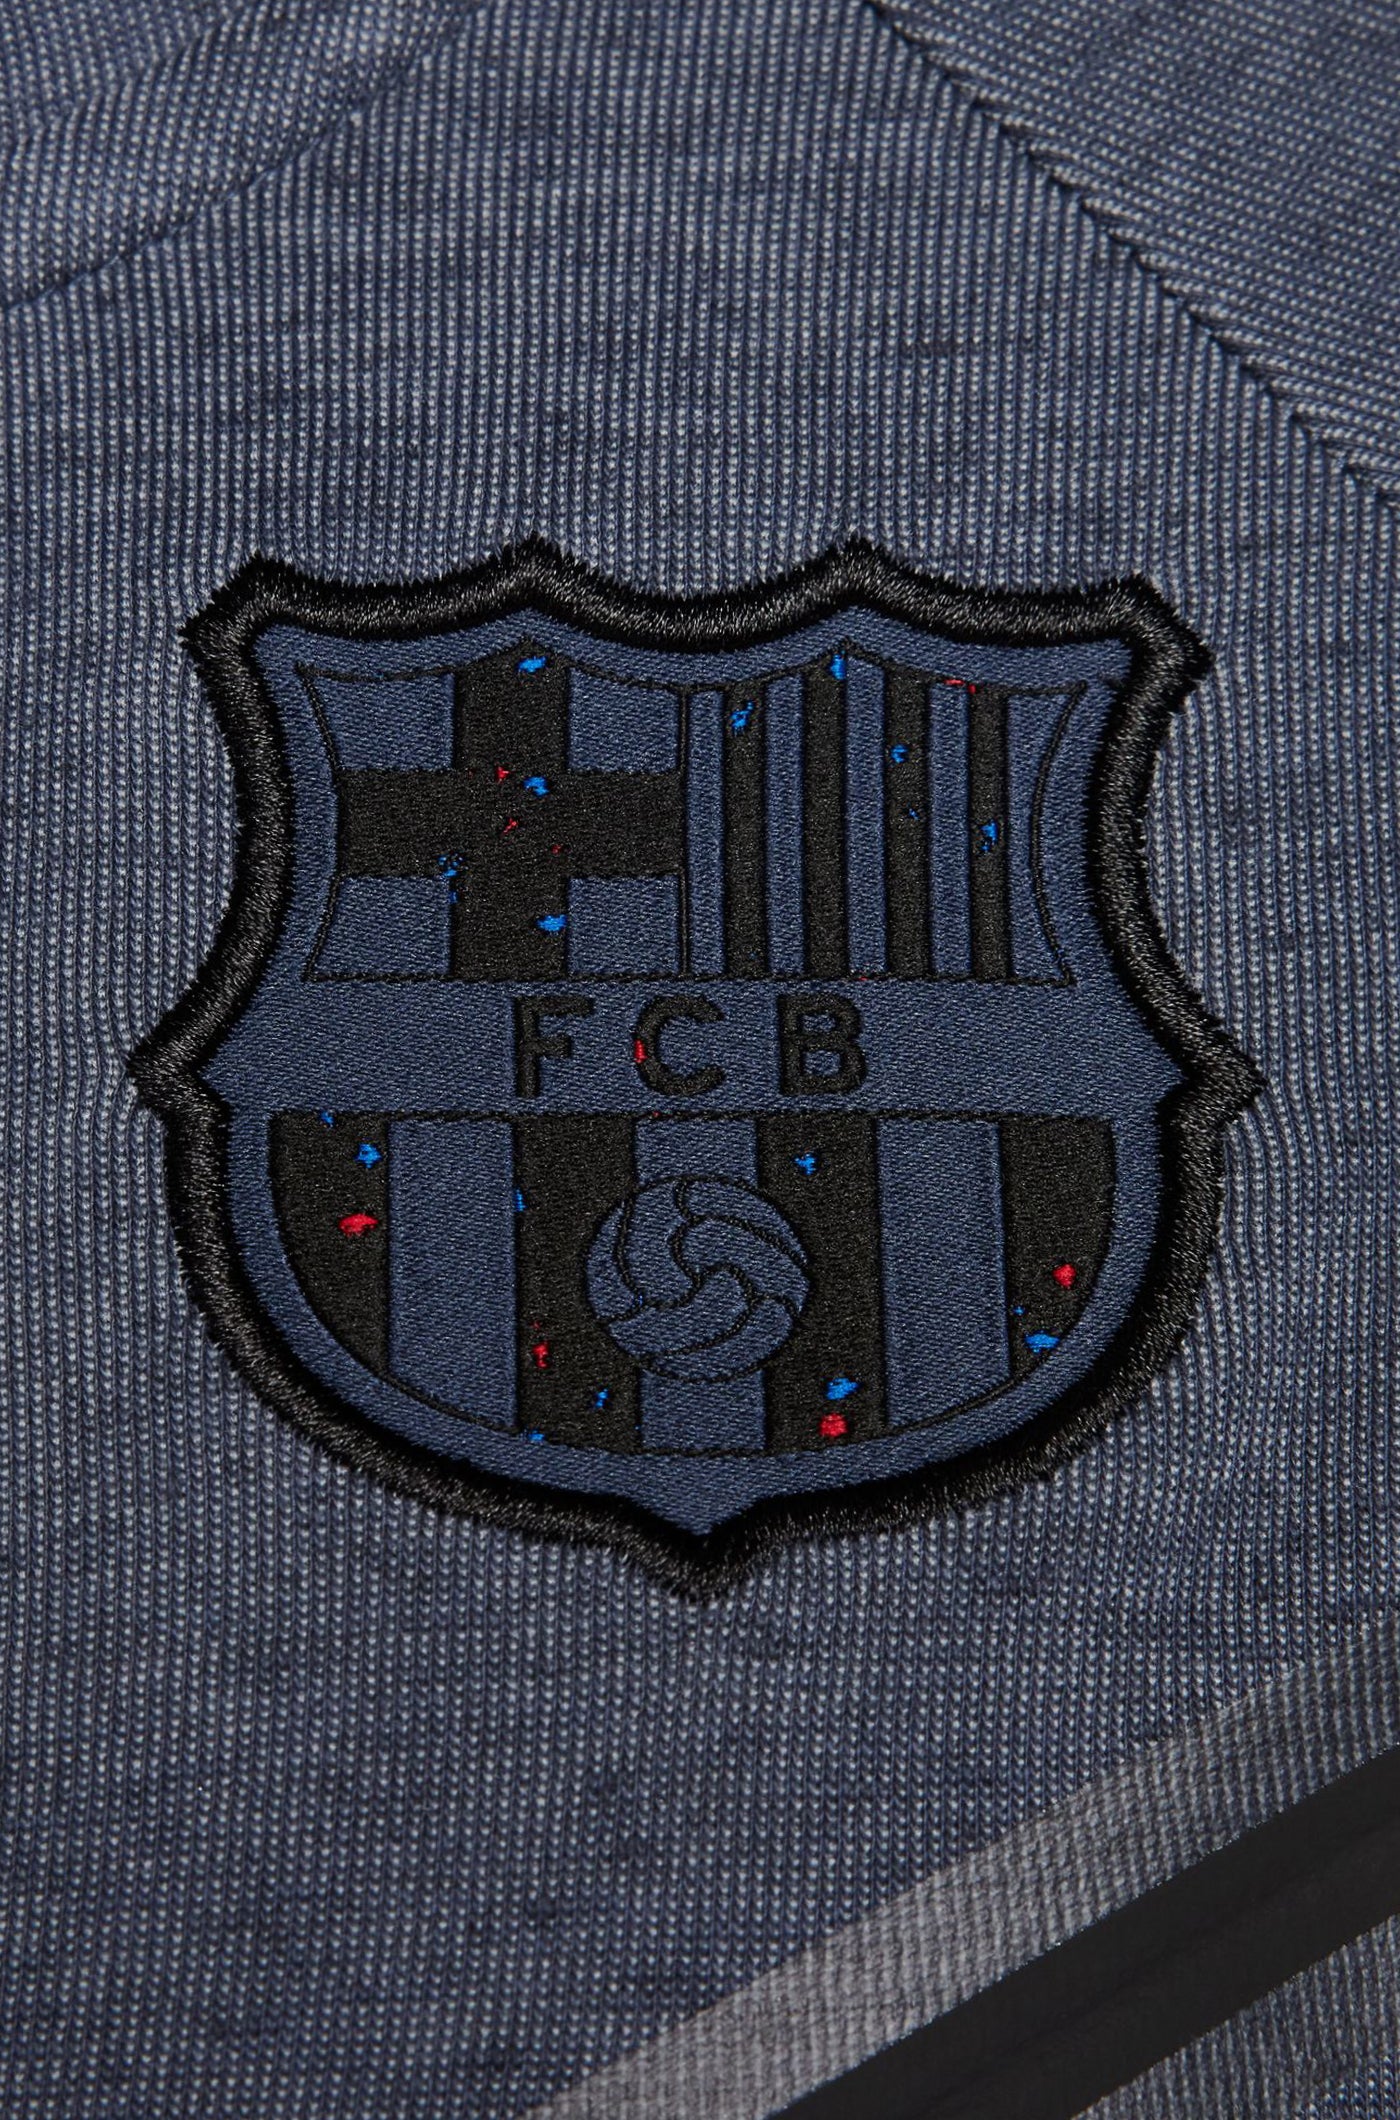 Jaqueta blau Barça Nike - Dona